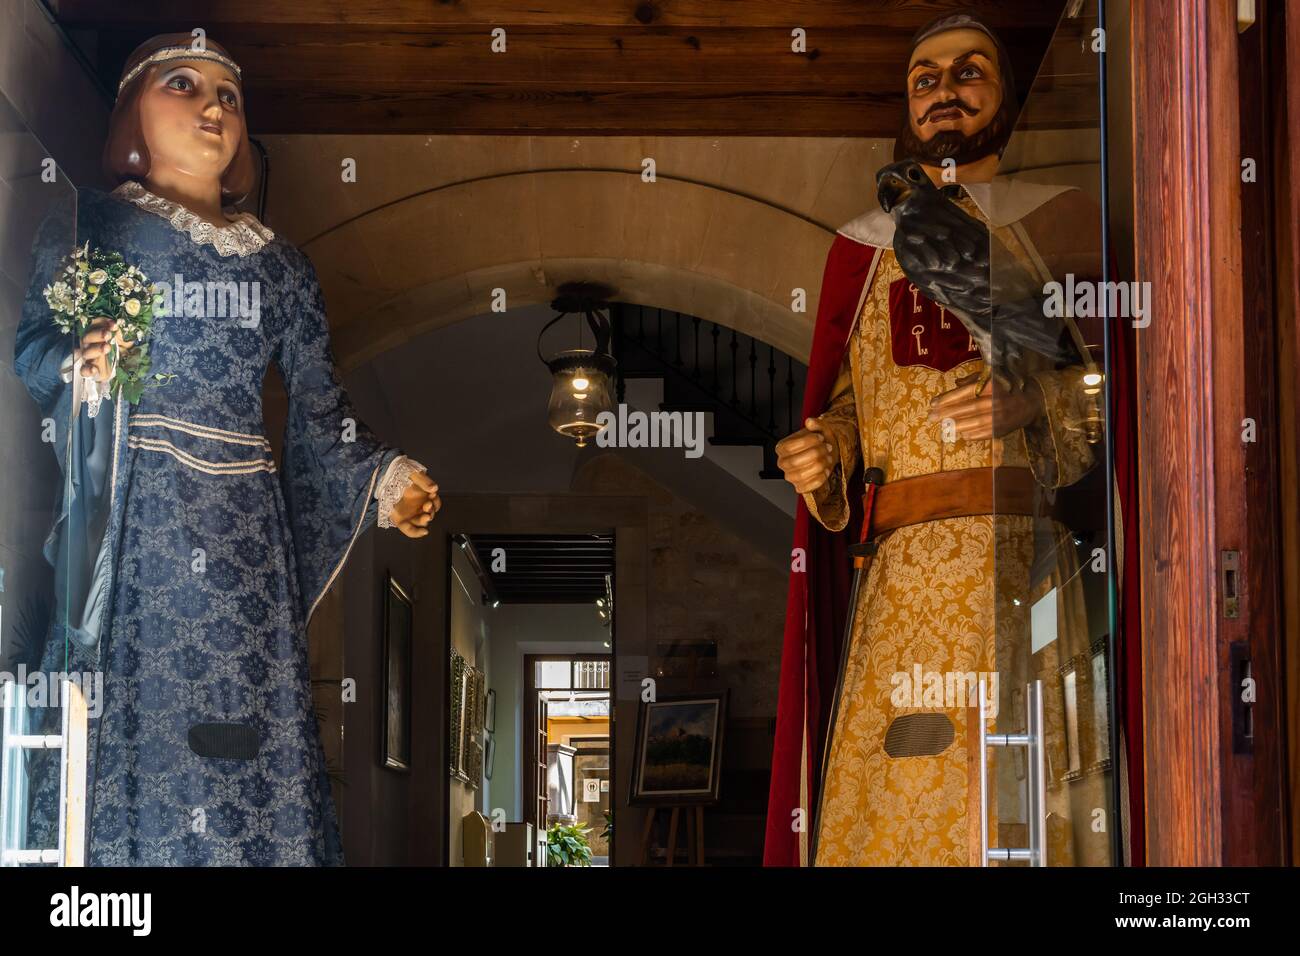 Santanyi, España; 04 2021 de septiembre: Esculturas de gigantes típicos de la cultura popular mallorquina en la entrada del Ayuntamiento de la ciudad de Santanyi Foto de stock